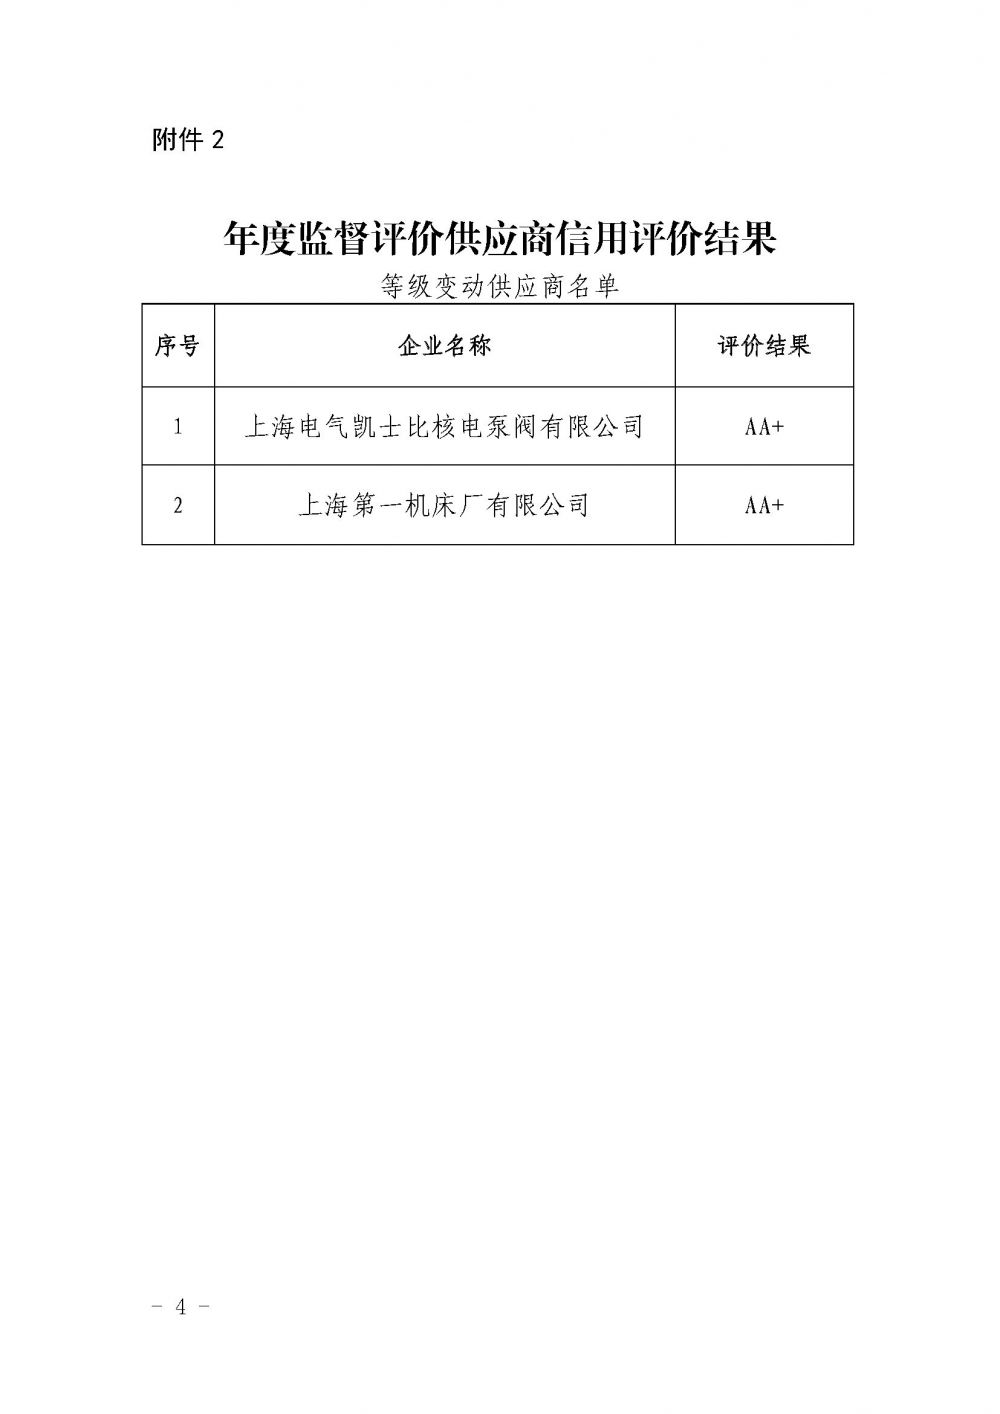 关于中国核能行业协会第九批核能行业供应商信用评价结果及年度监督评价结果的公示_页面_4.jpg